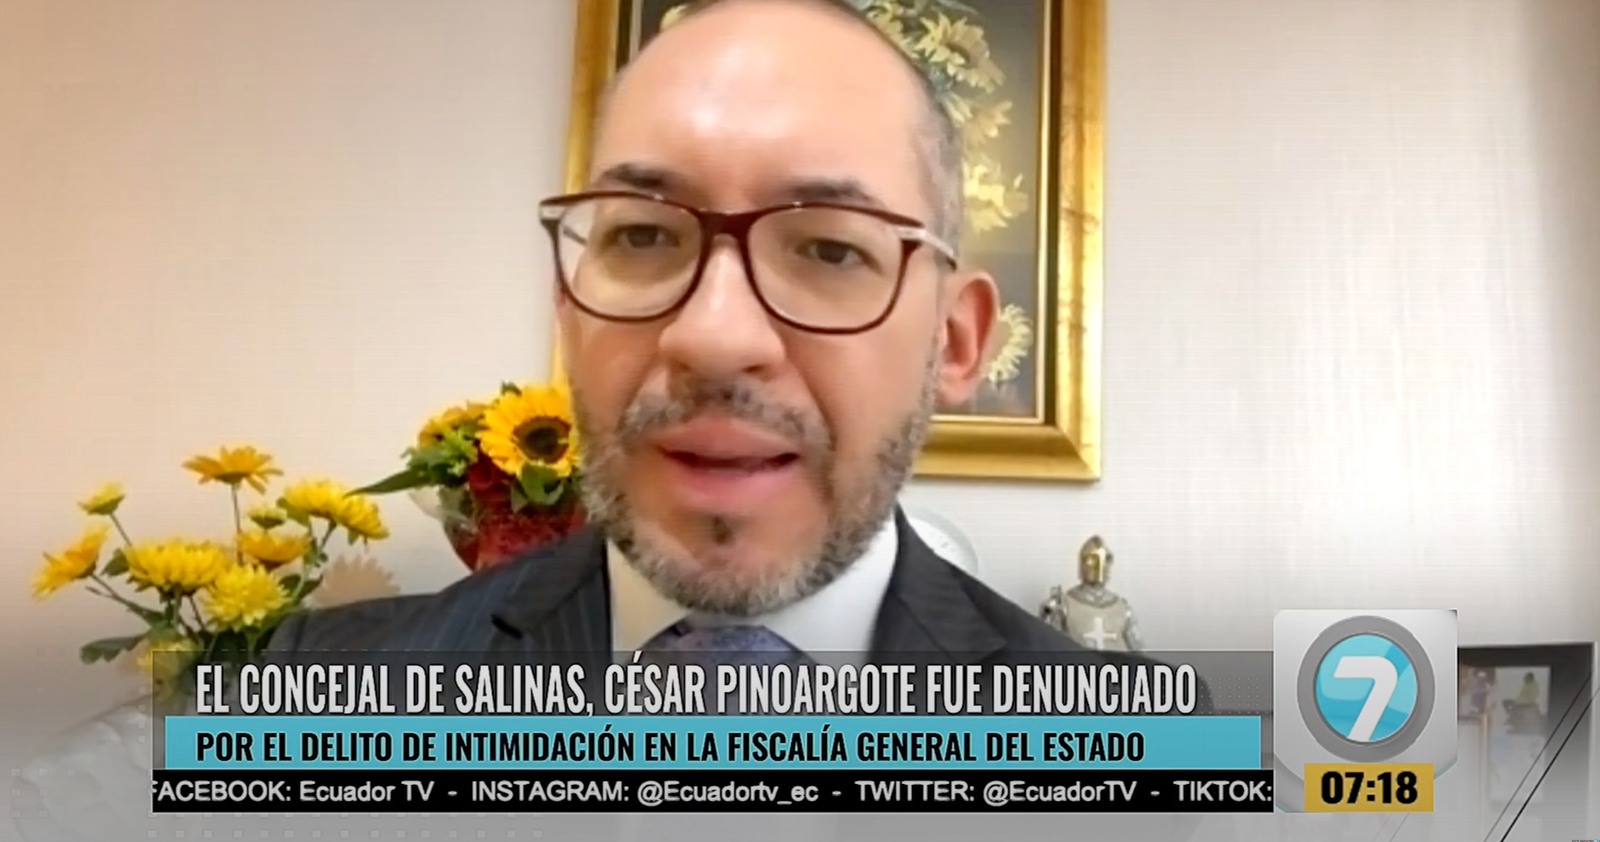 Concejal de Salinas César Pinoargote fue denunciado por intimidación